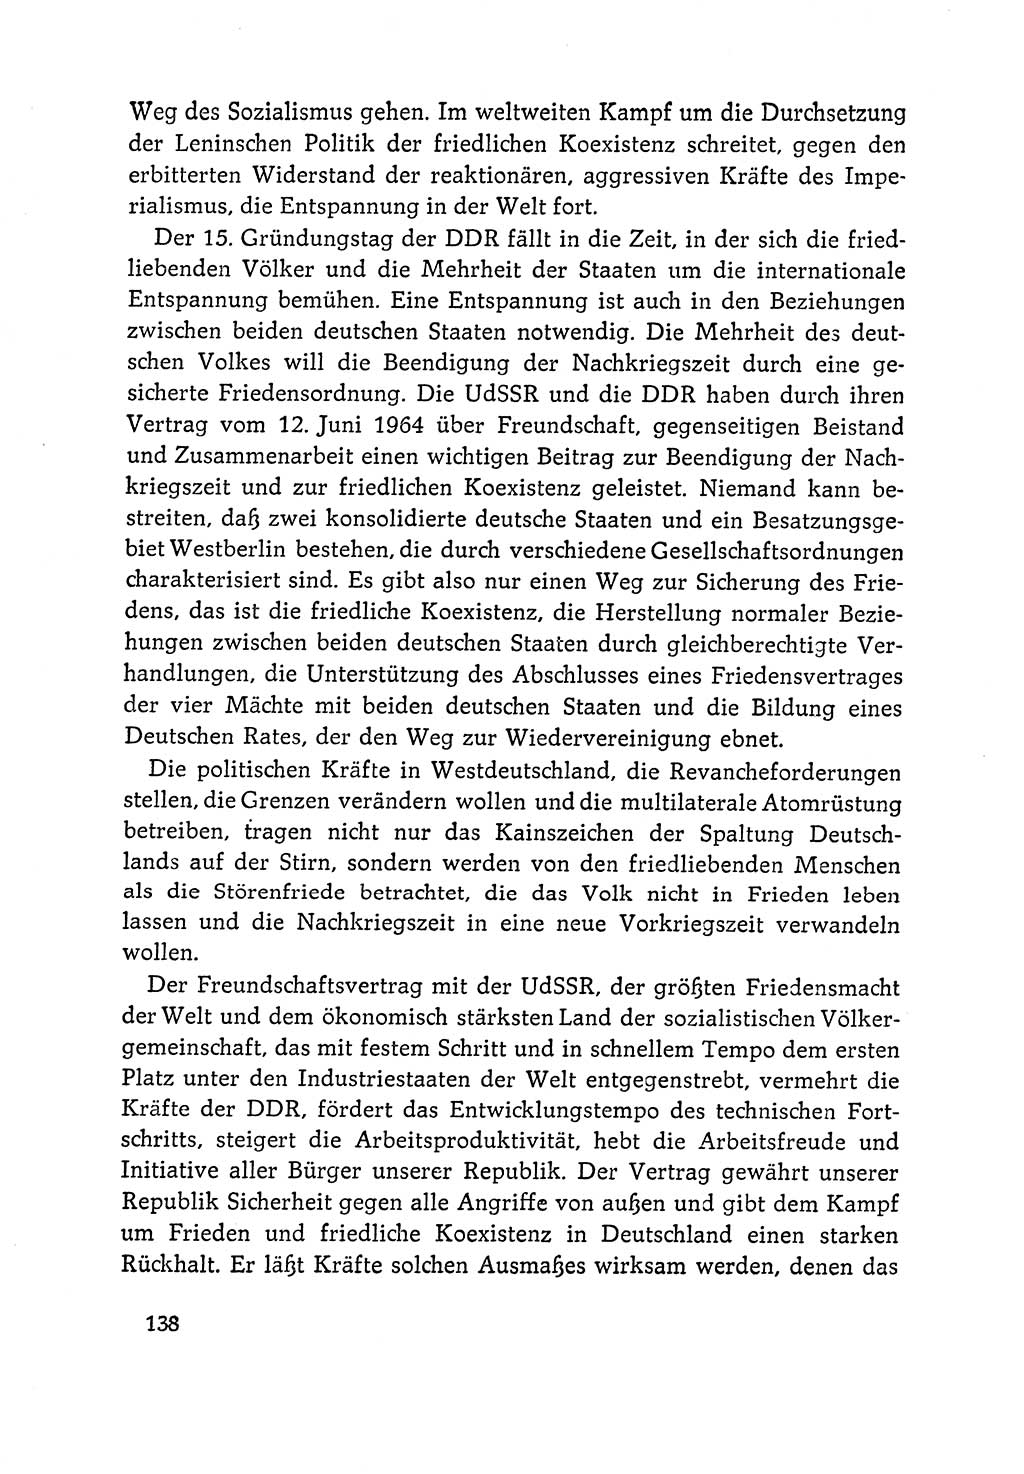 Dokumente der Sozialistischen Einheitspartei Deutschlands (SED) [Deutsche Demokratische Republik (DDR)] 1964-1965, Seite 138 (Dok. SED DDR 1964-1965, S. 138)